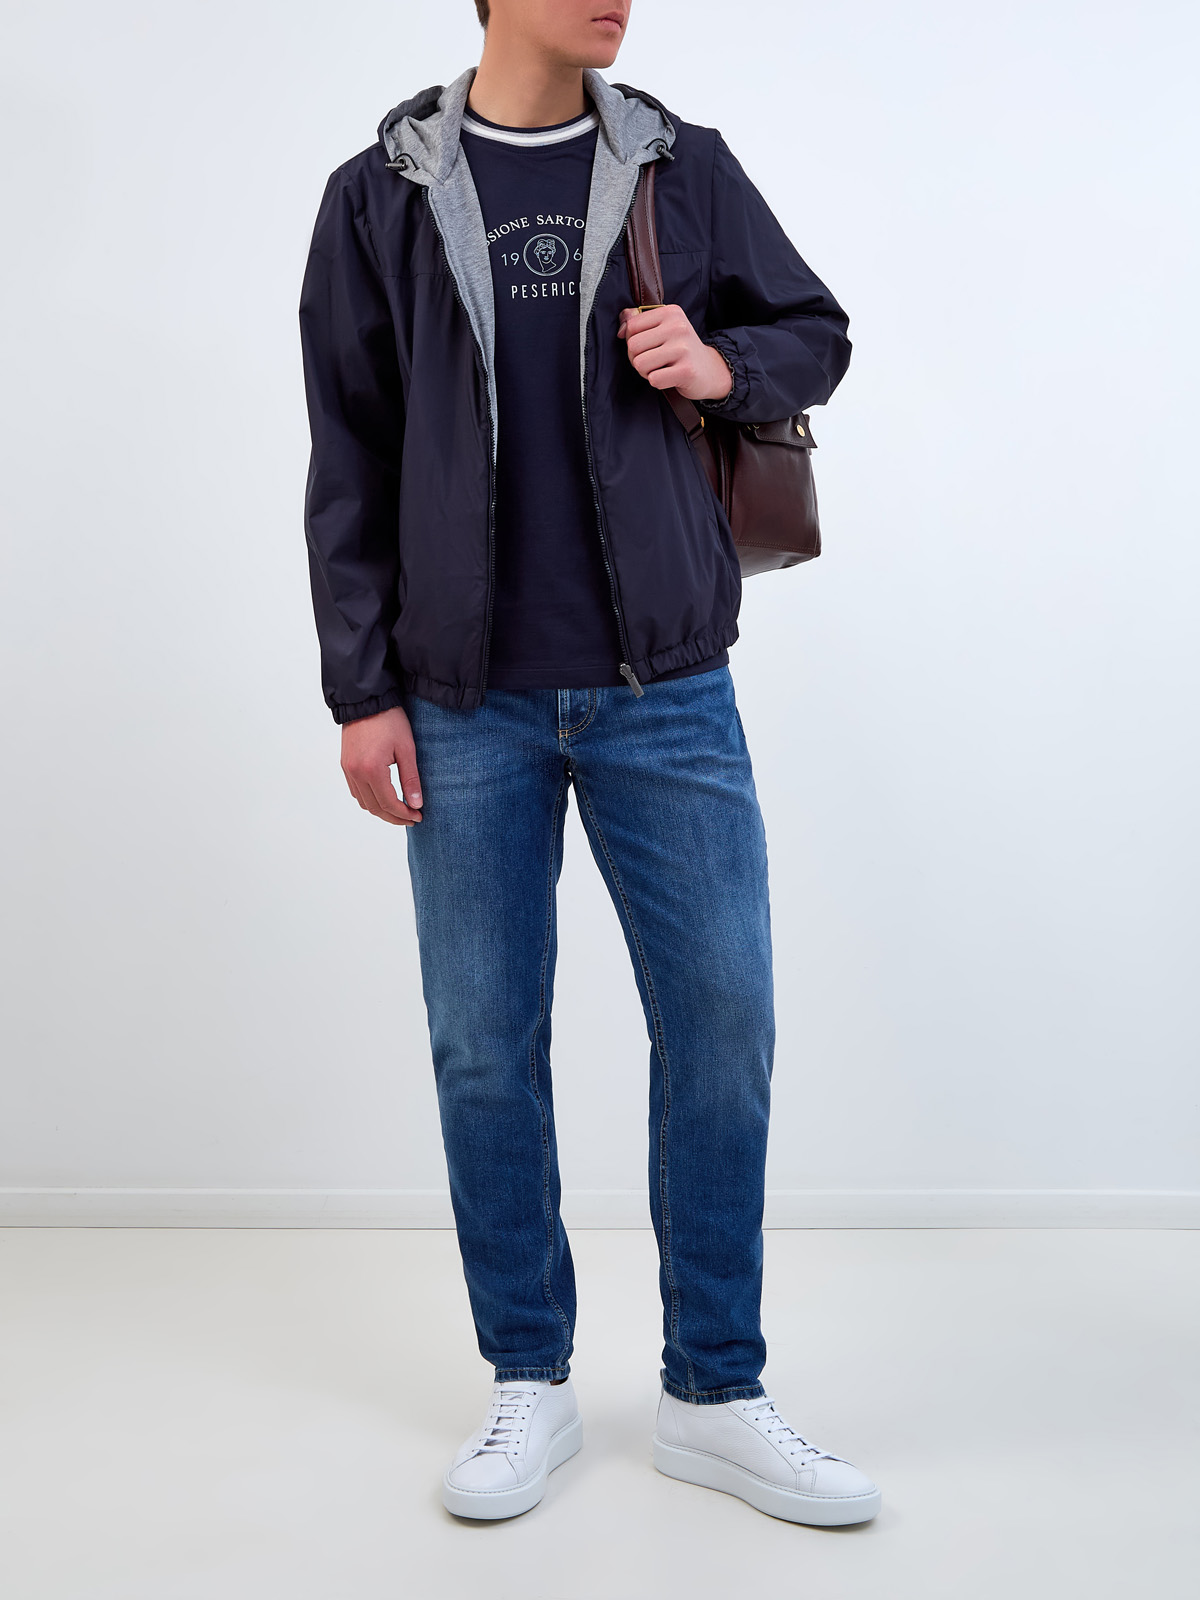 Двусторонняя куртка-ветровка из влагозащитного нейлона и хлопка PESERICO, цвет мульти, размер 52;54;56 - фото 2